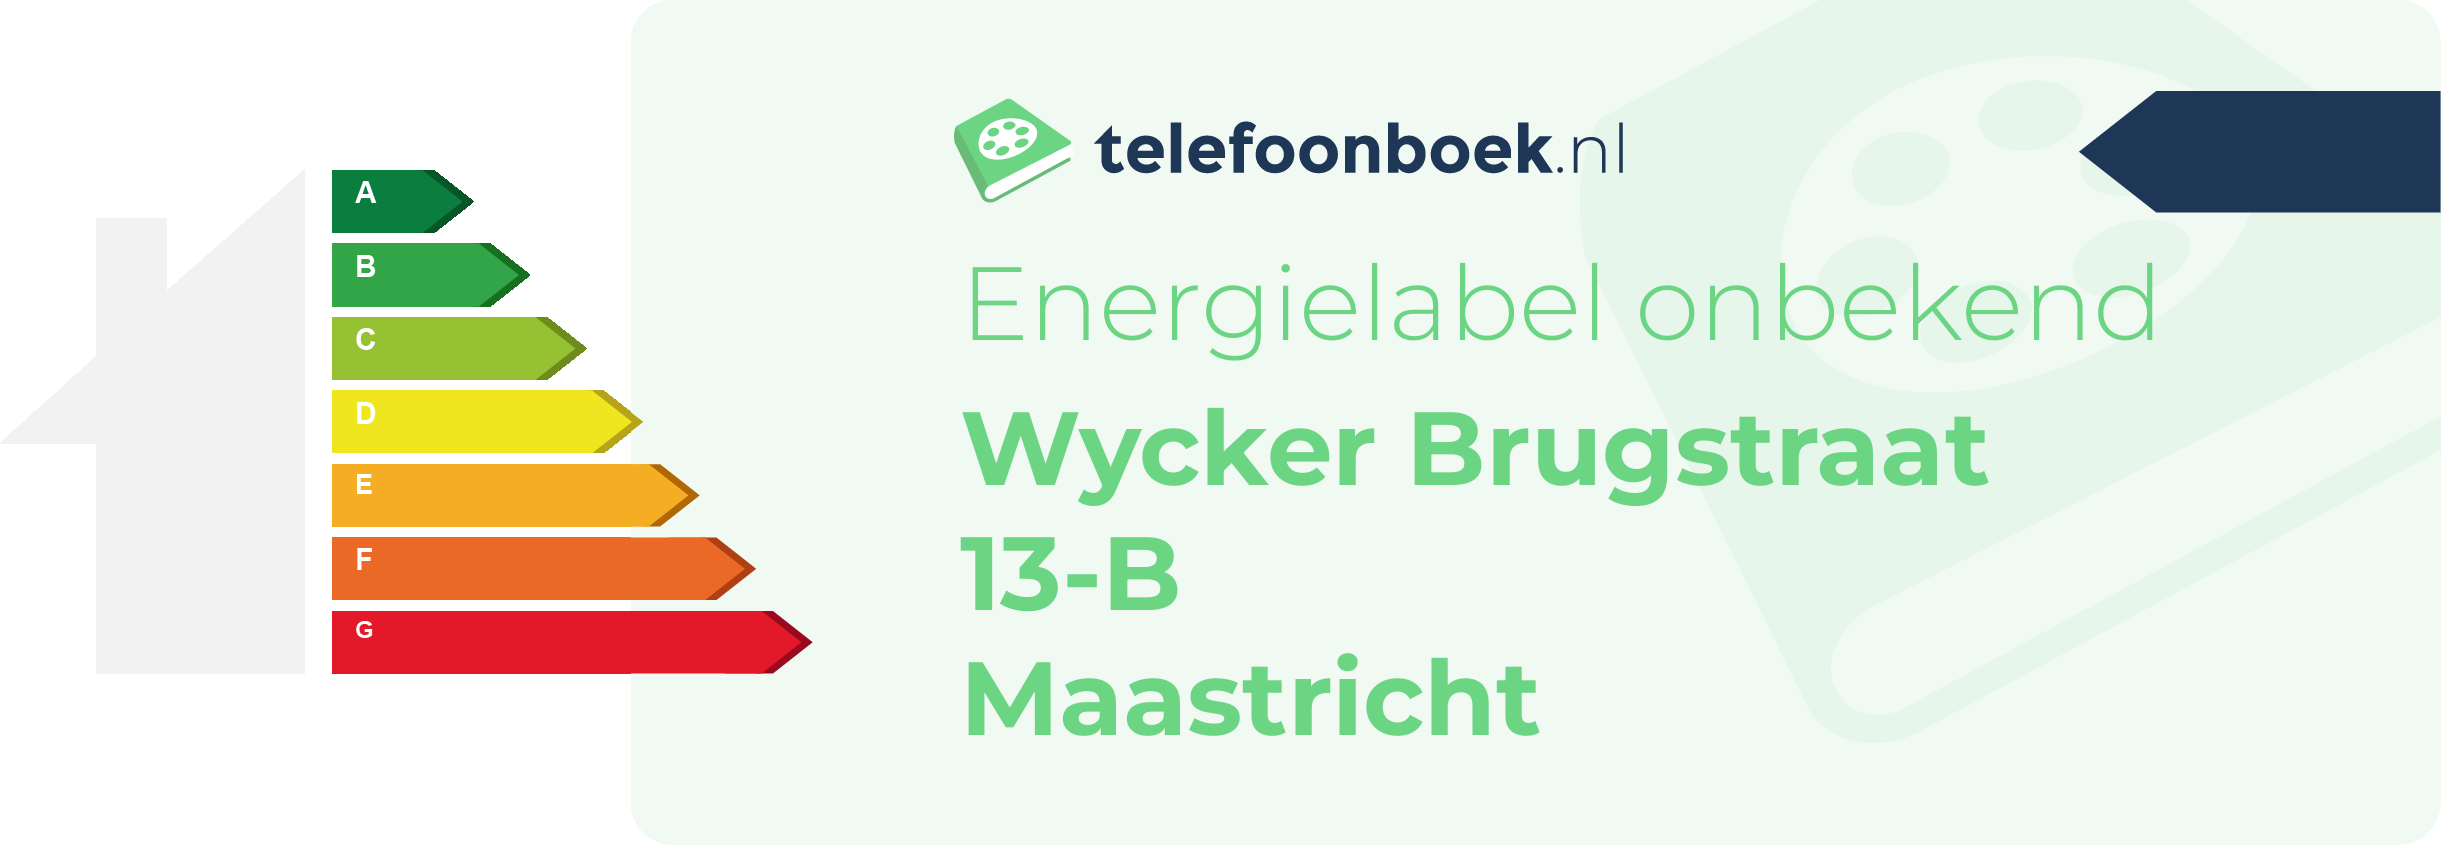 Energielabel Wycker Brugstraat 13-B Maastricht